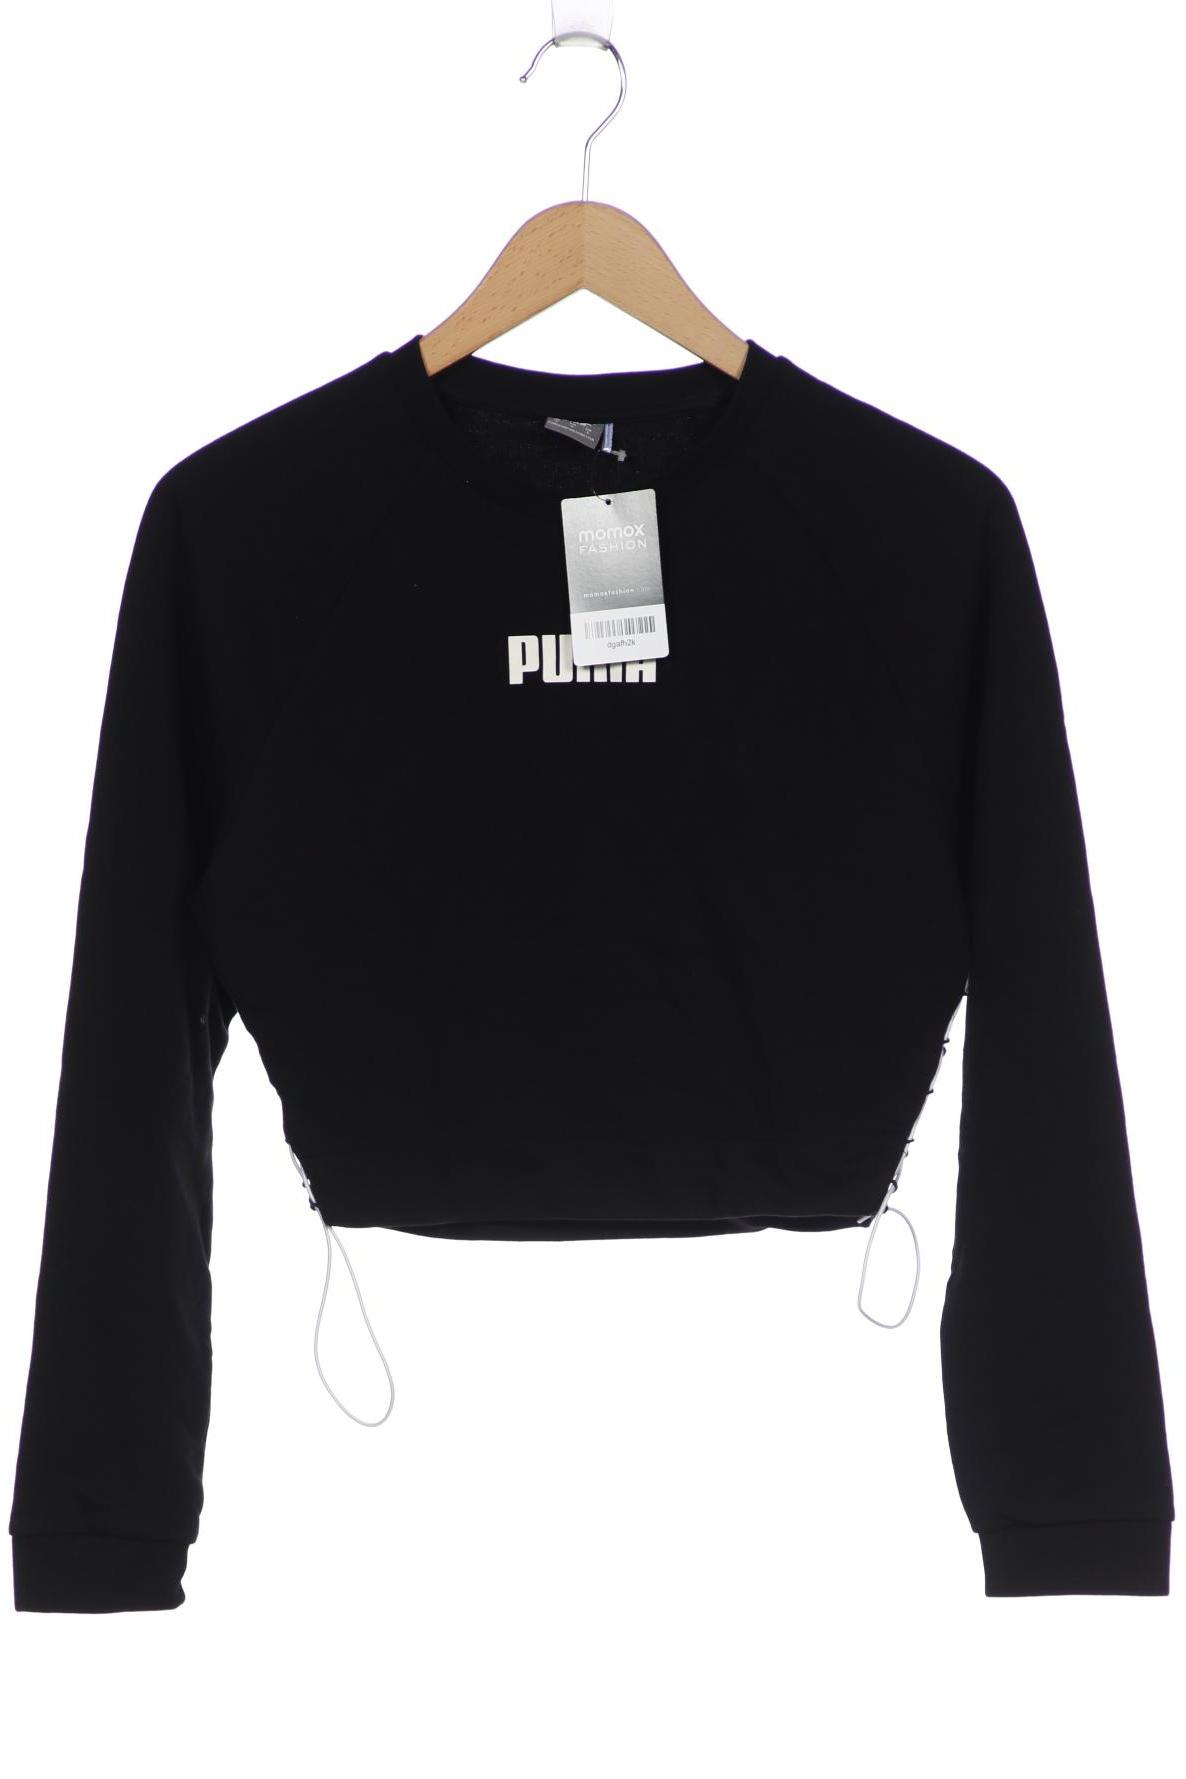 PUMA Damen Sweatshirt, schwarz von Puma